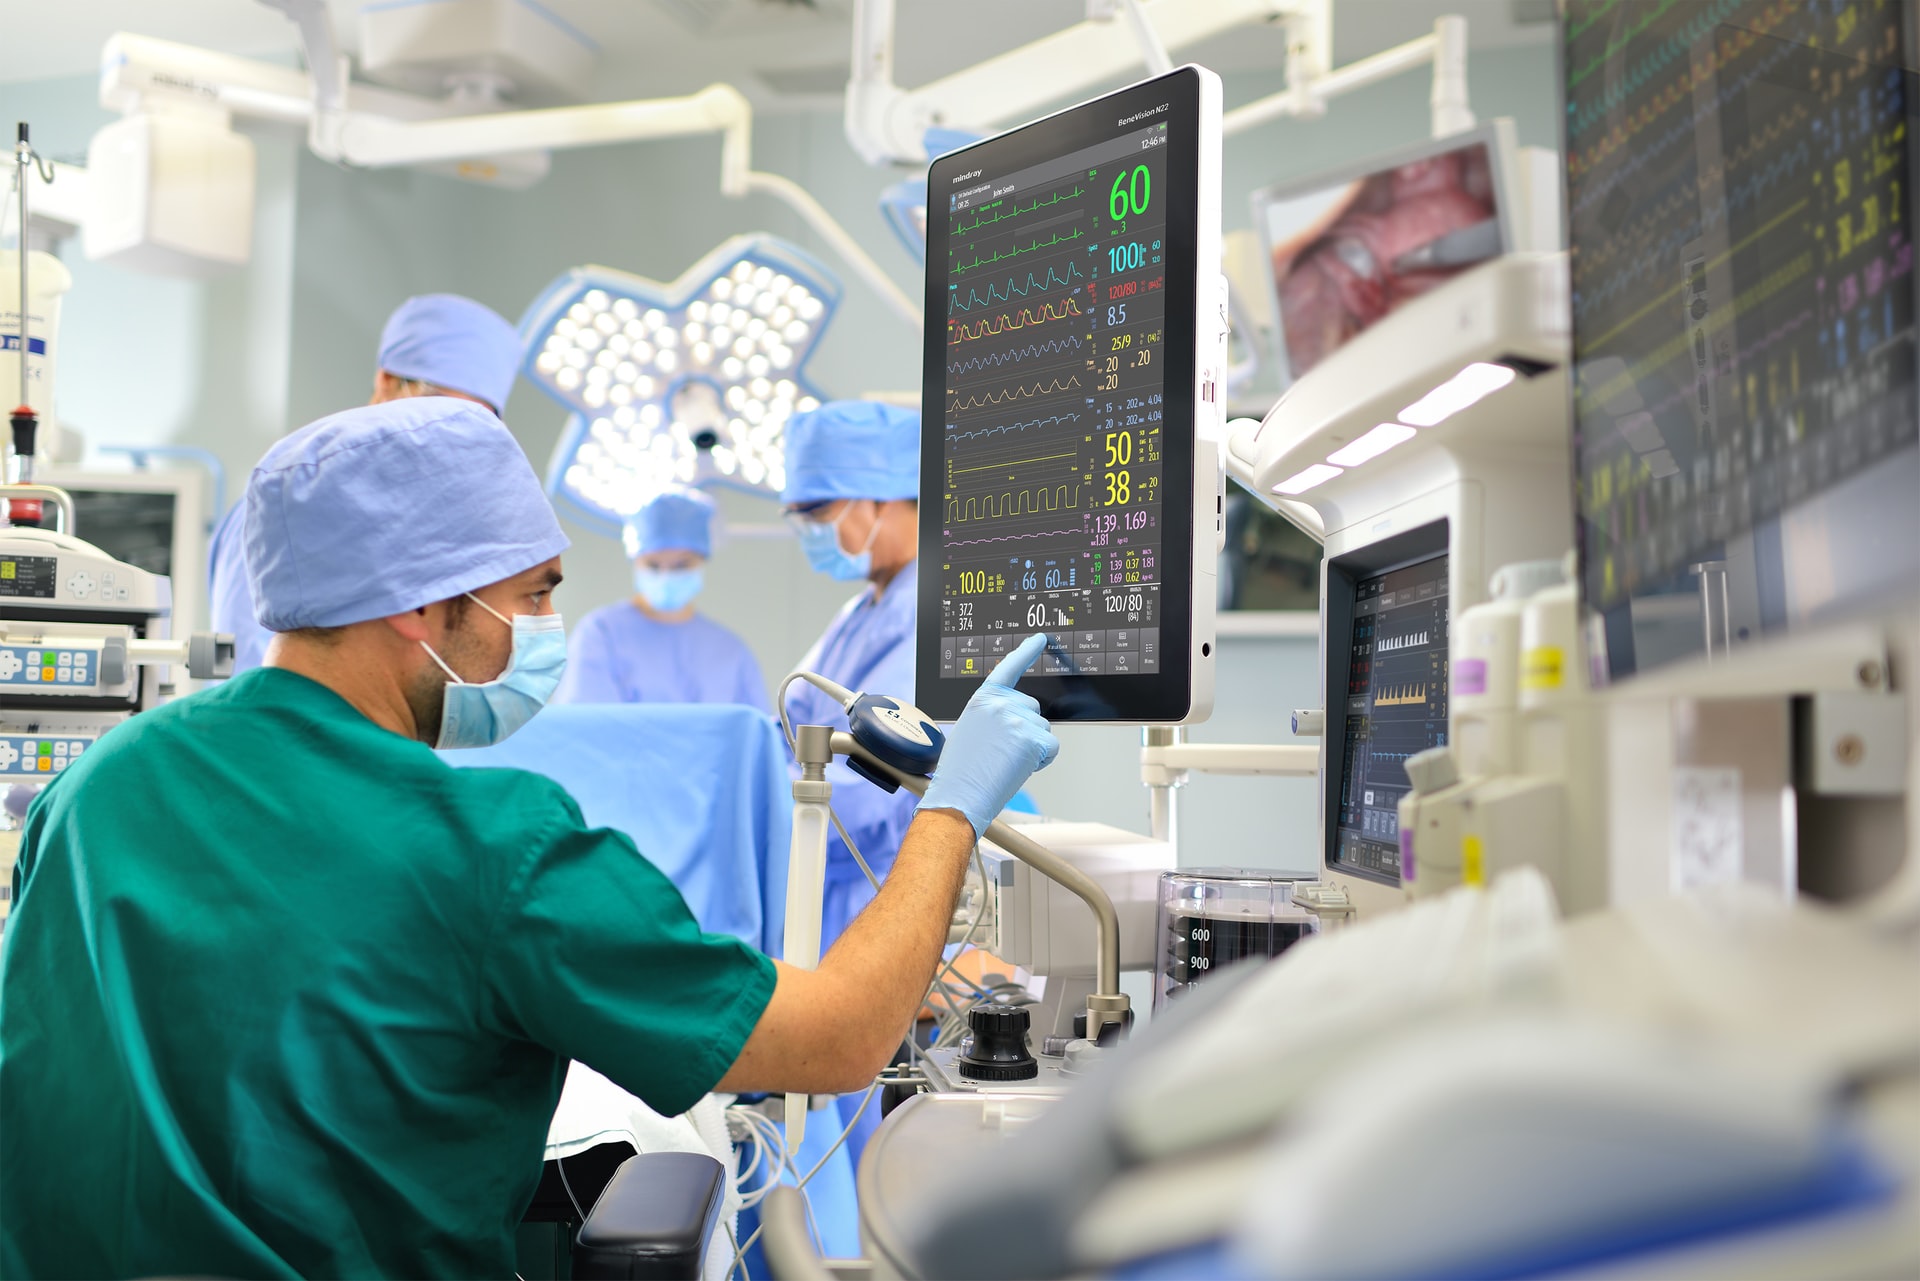 Mengenal Jenis Operasi Yang Ada Di Dunia Medis Agm Medica